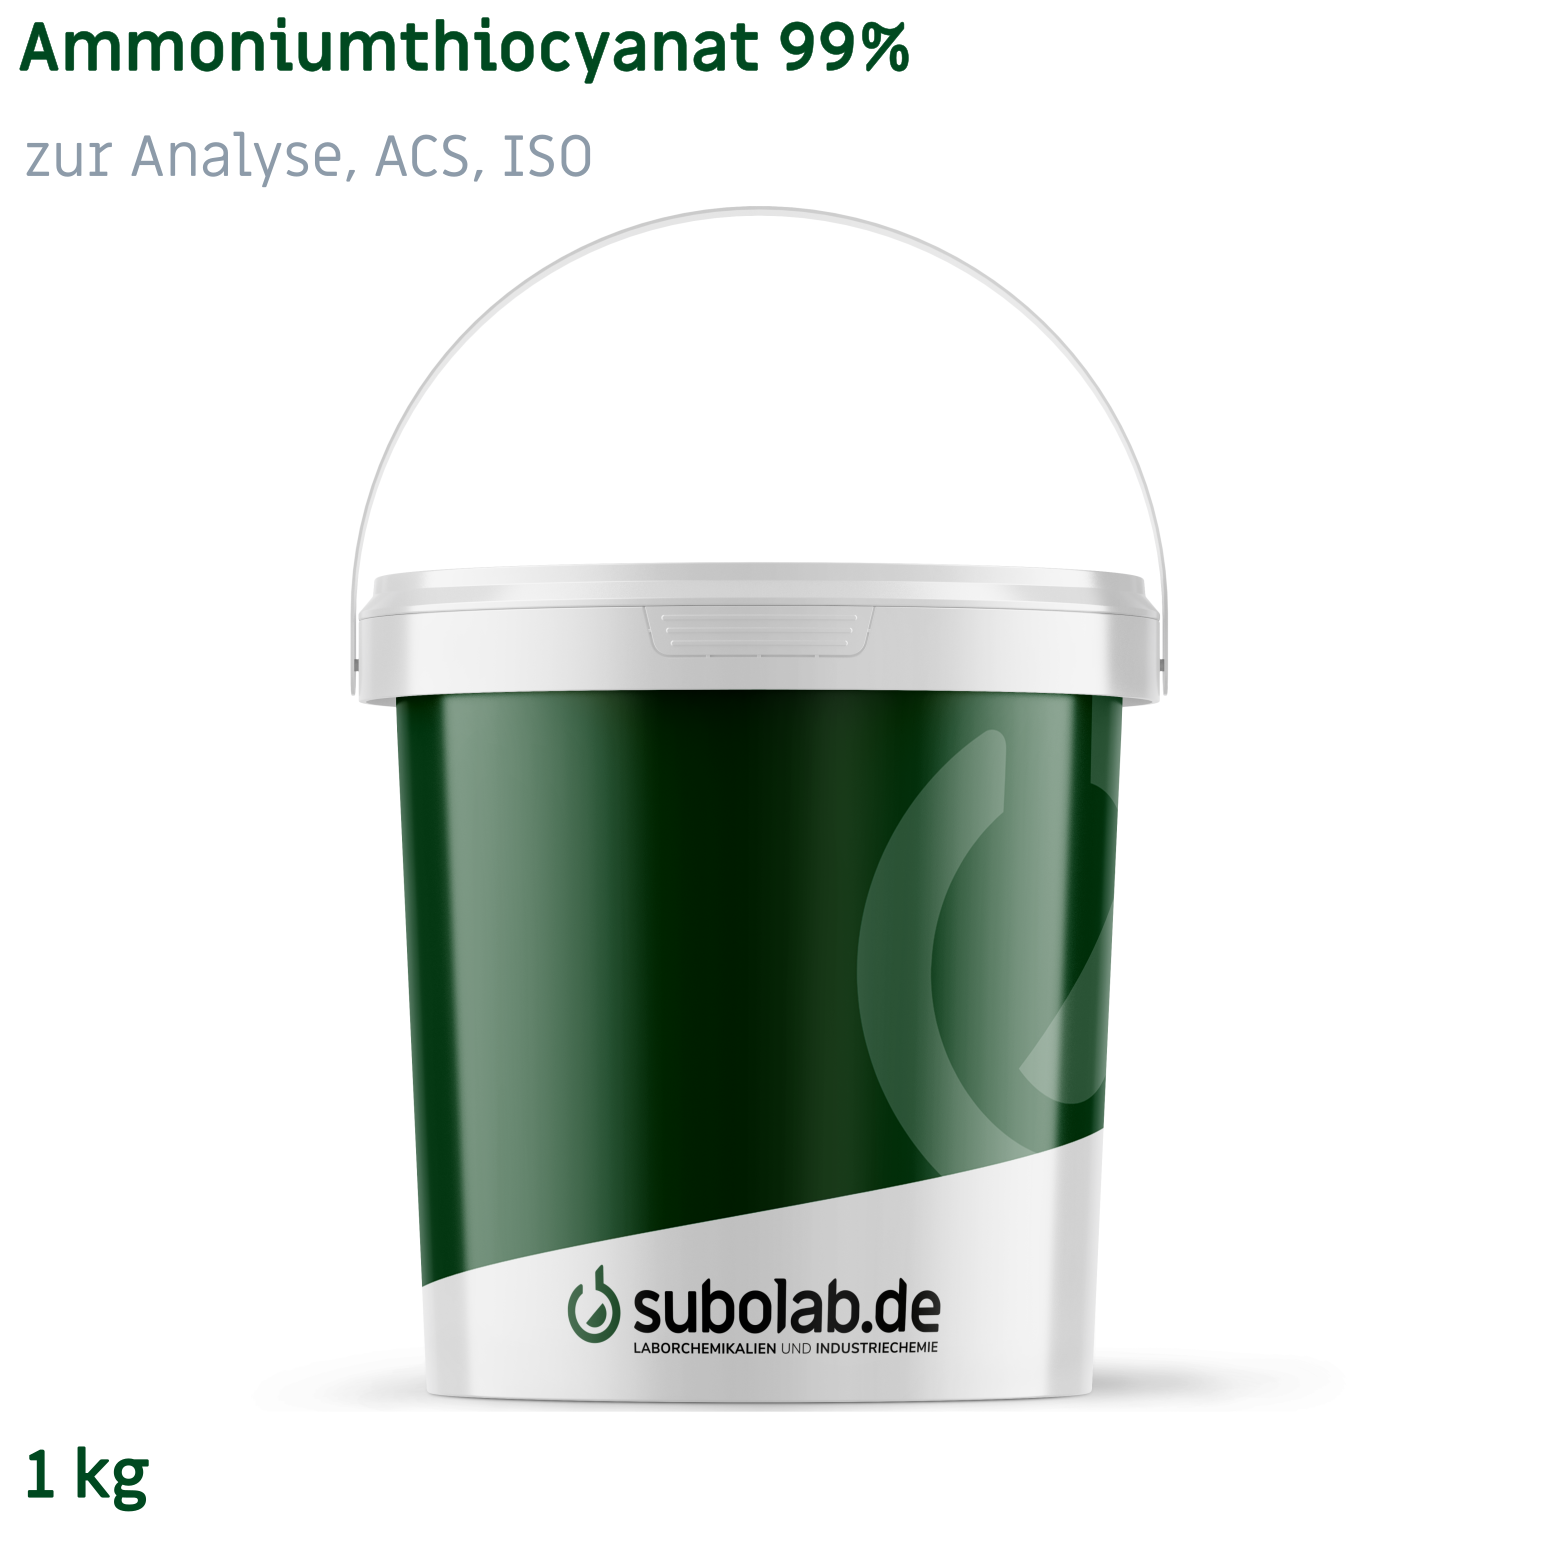 Bild von Ammoniumthiocyanat 99% zur Analyse, ACS, ISO (1 kg)